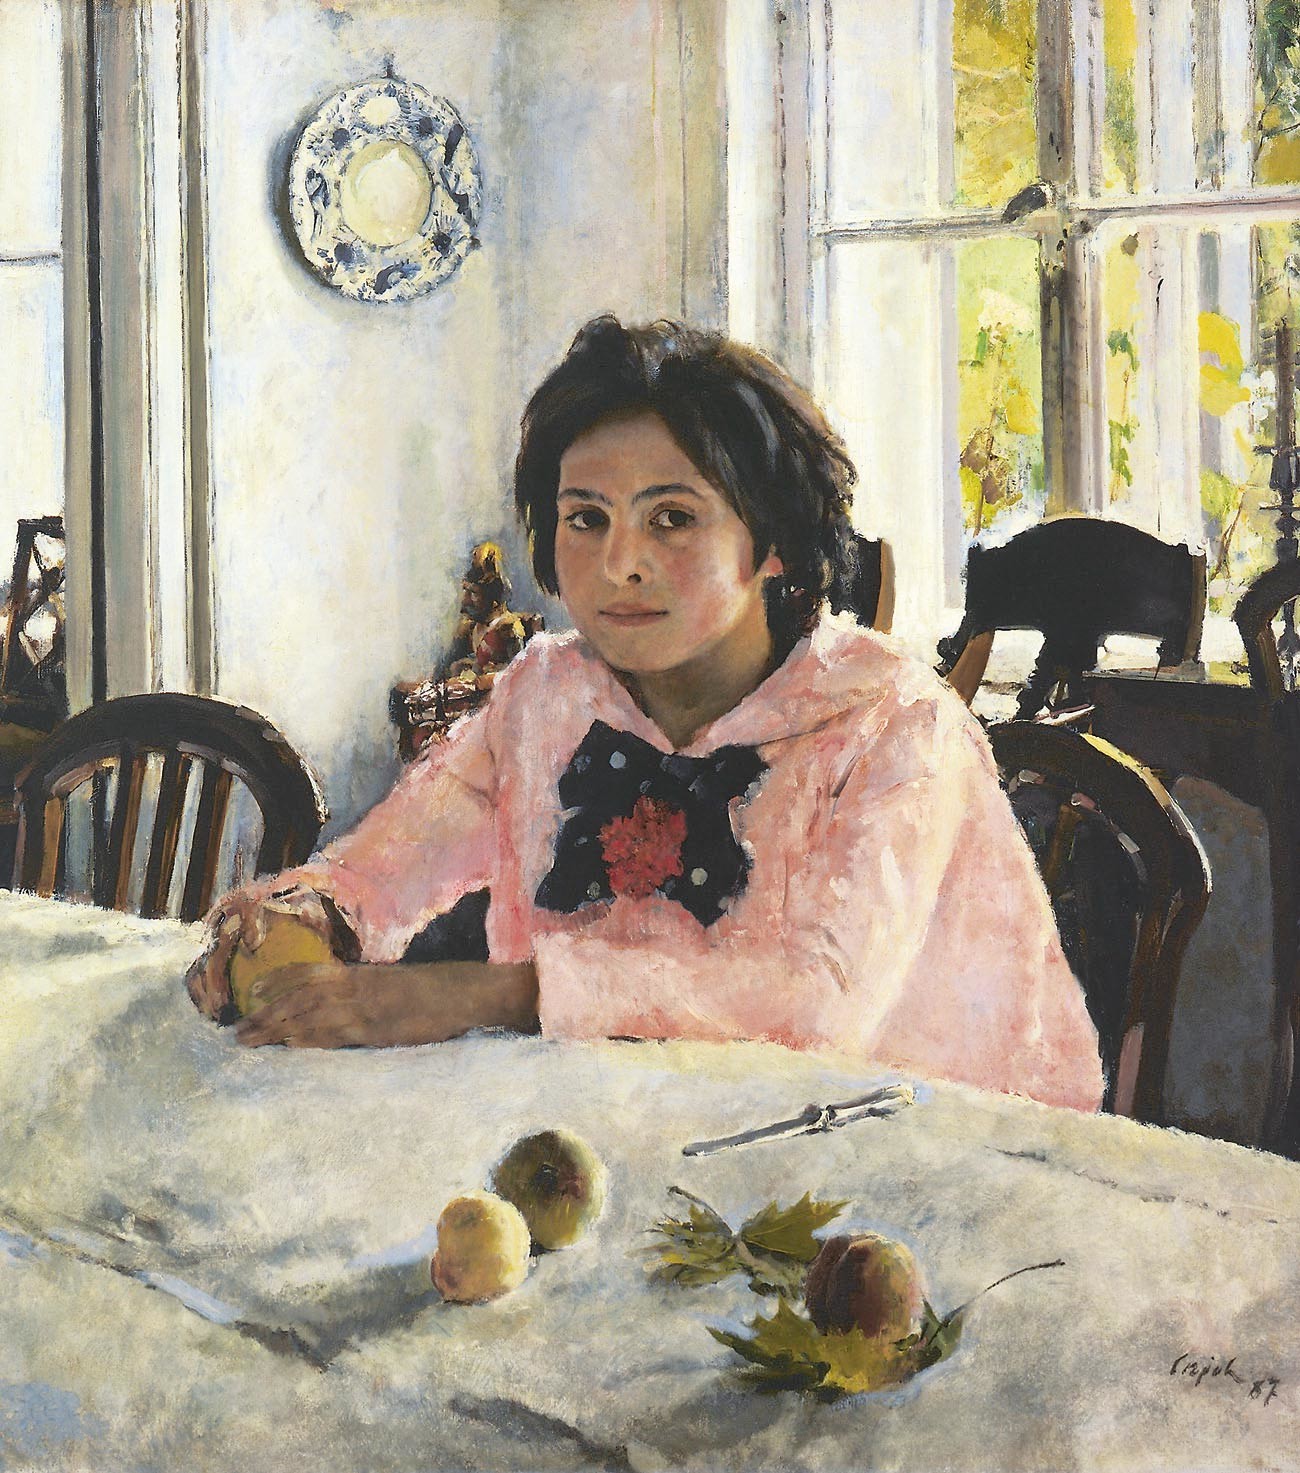 Валентин Серов. Девочка с персиками, 1887